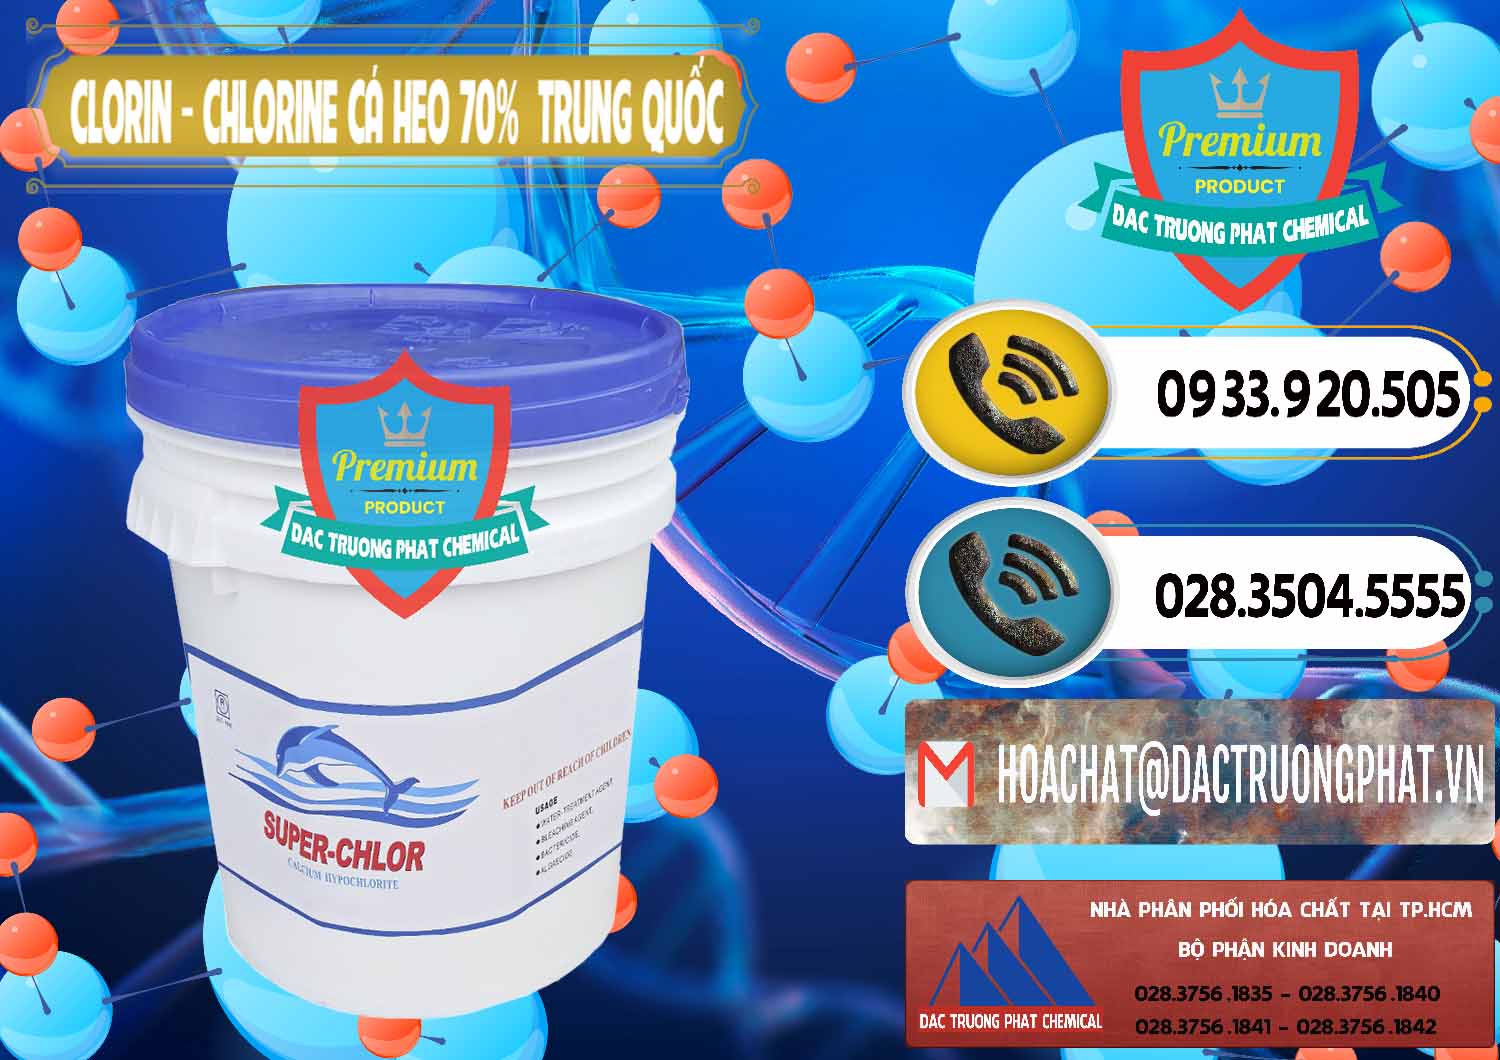 Nơi chuyên cung cấp _ bán Clorin - Chlorine Cá Heo 70% Super Chlor Nắp Xanh Trung Quốc China - 0209 - Nhập khẩu và phân phối hóa chất tại TP.HCM - hoachatdetnhuom.vn